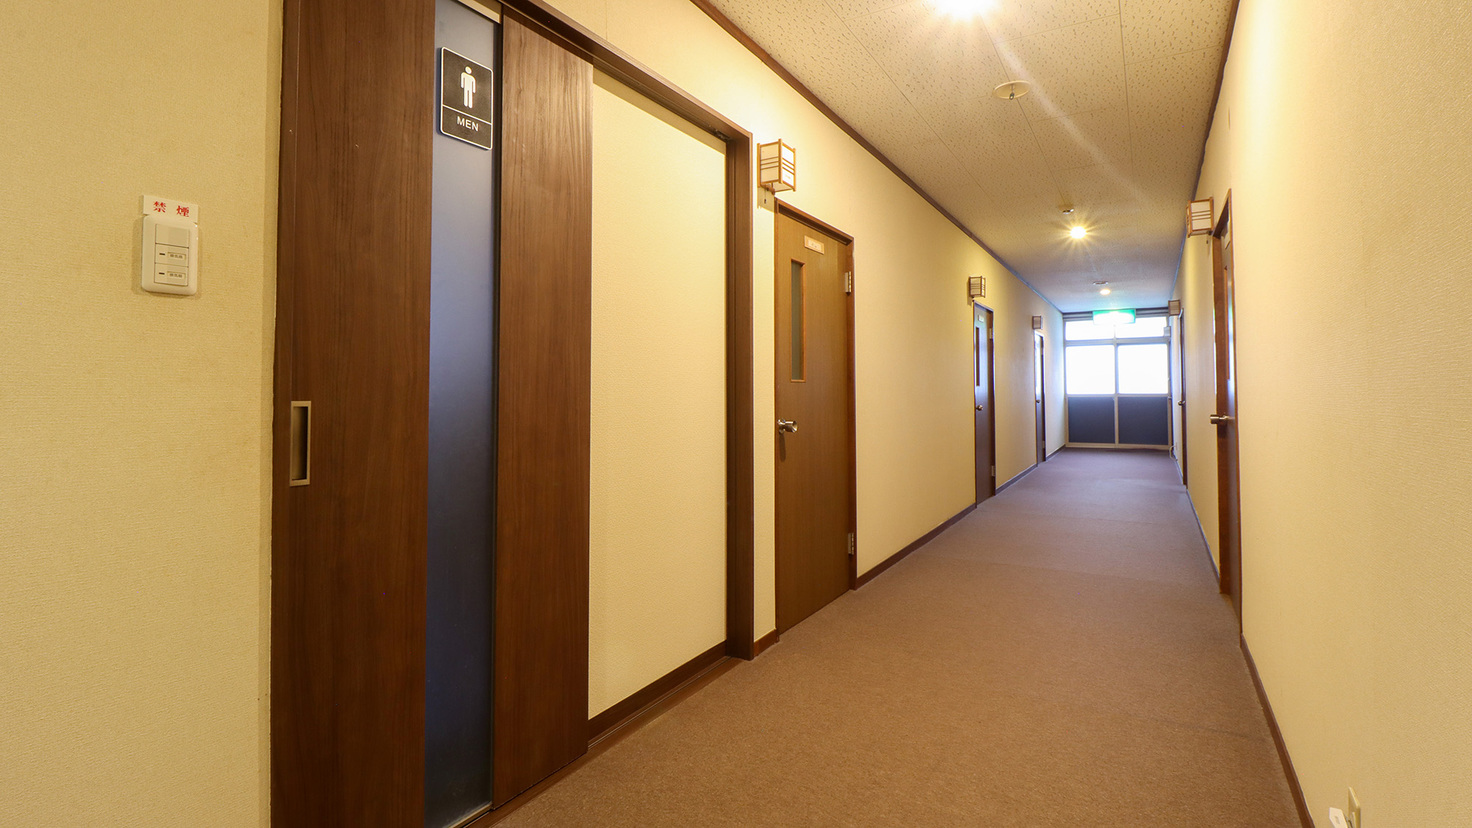 #館内すっきりとした広めの廊下です。